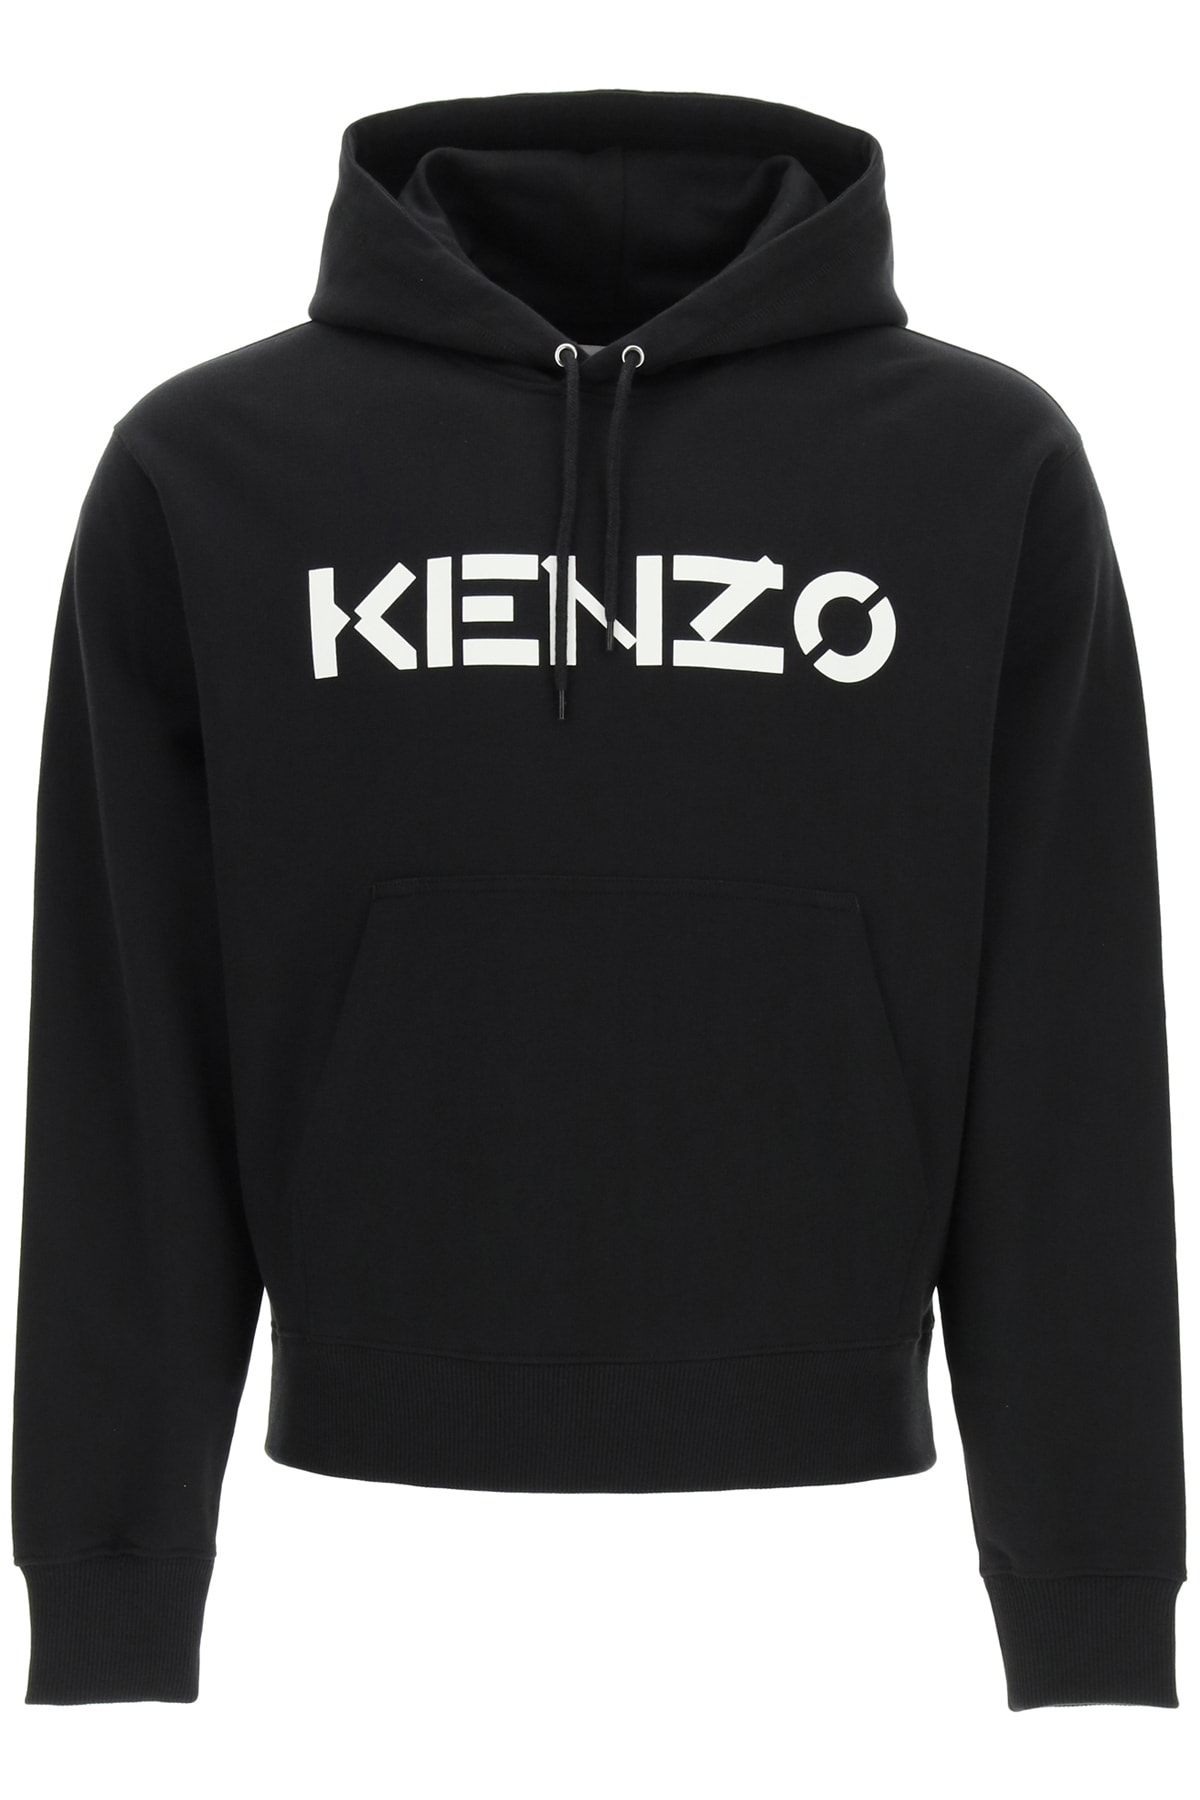 Kenzo Hooded Sweatshirt With Logo Print